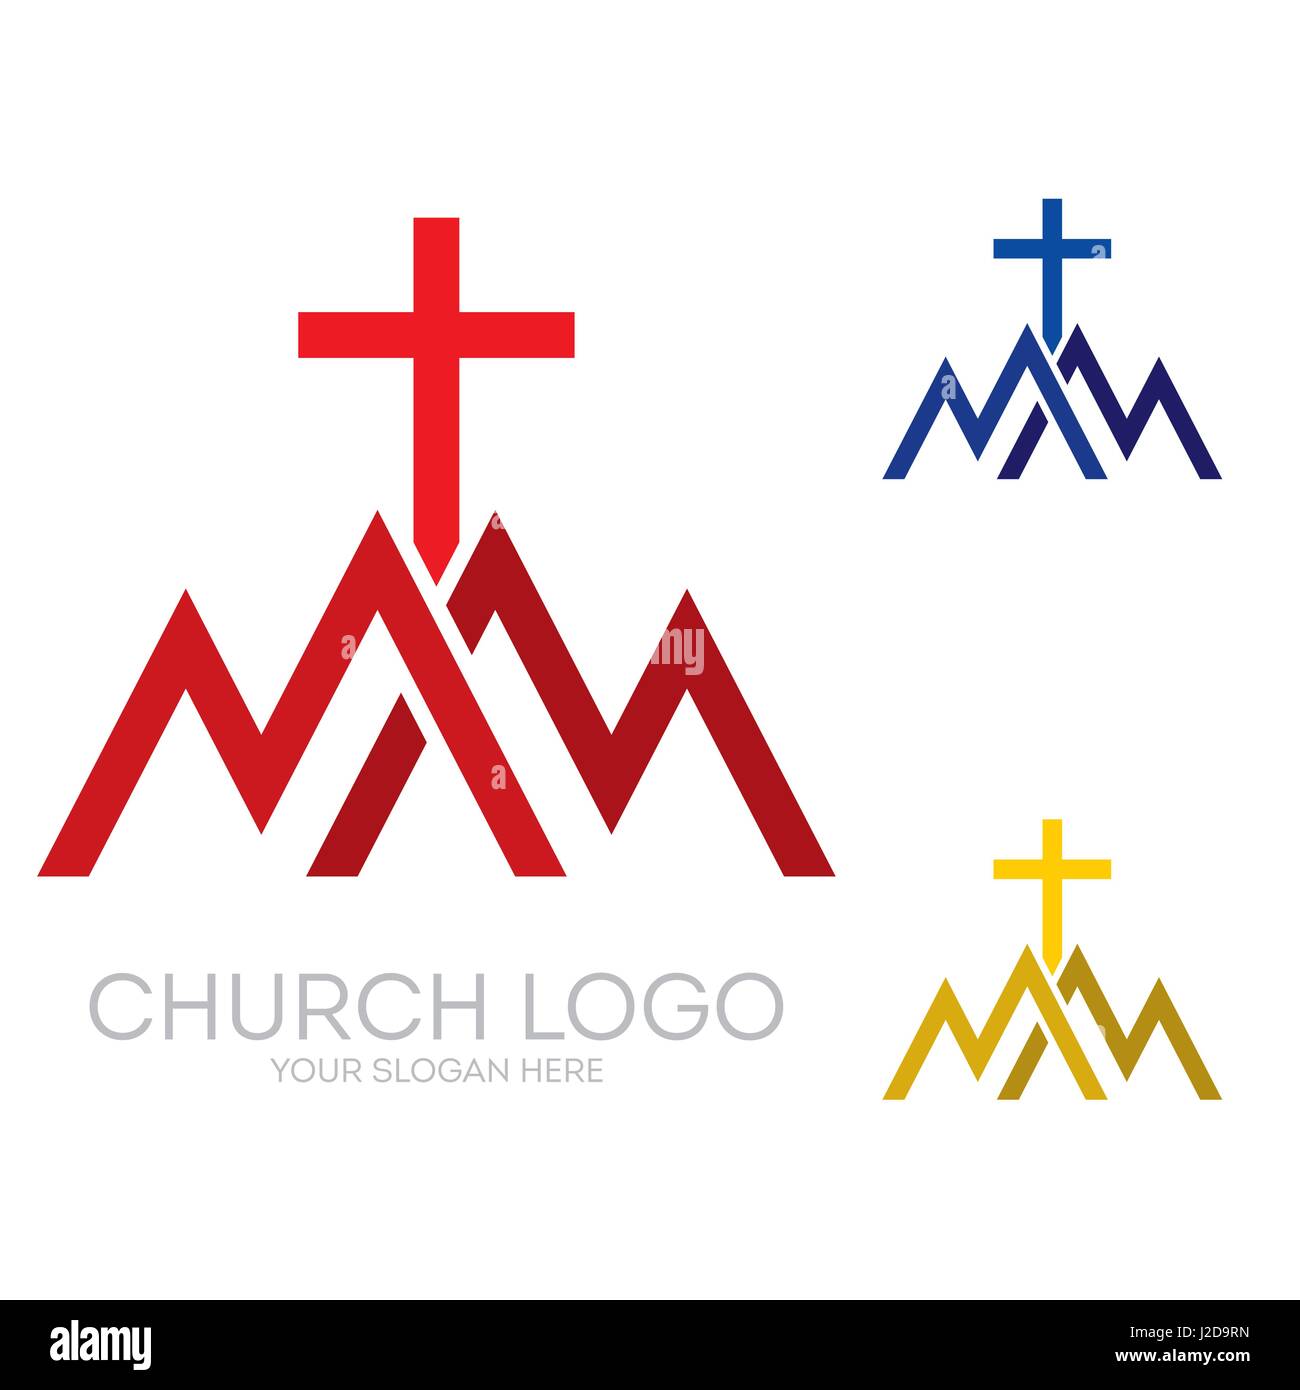 Logo de l'église. Symboles chrétiens. Des triangles, des montagnes, de la croix de Jésus. Illustration de Vecteur